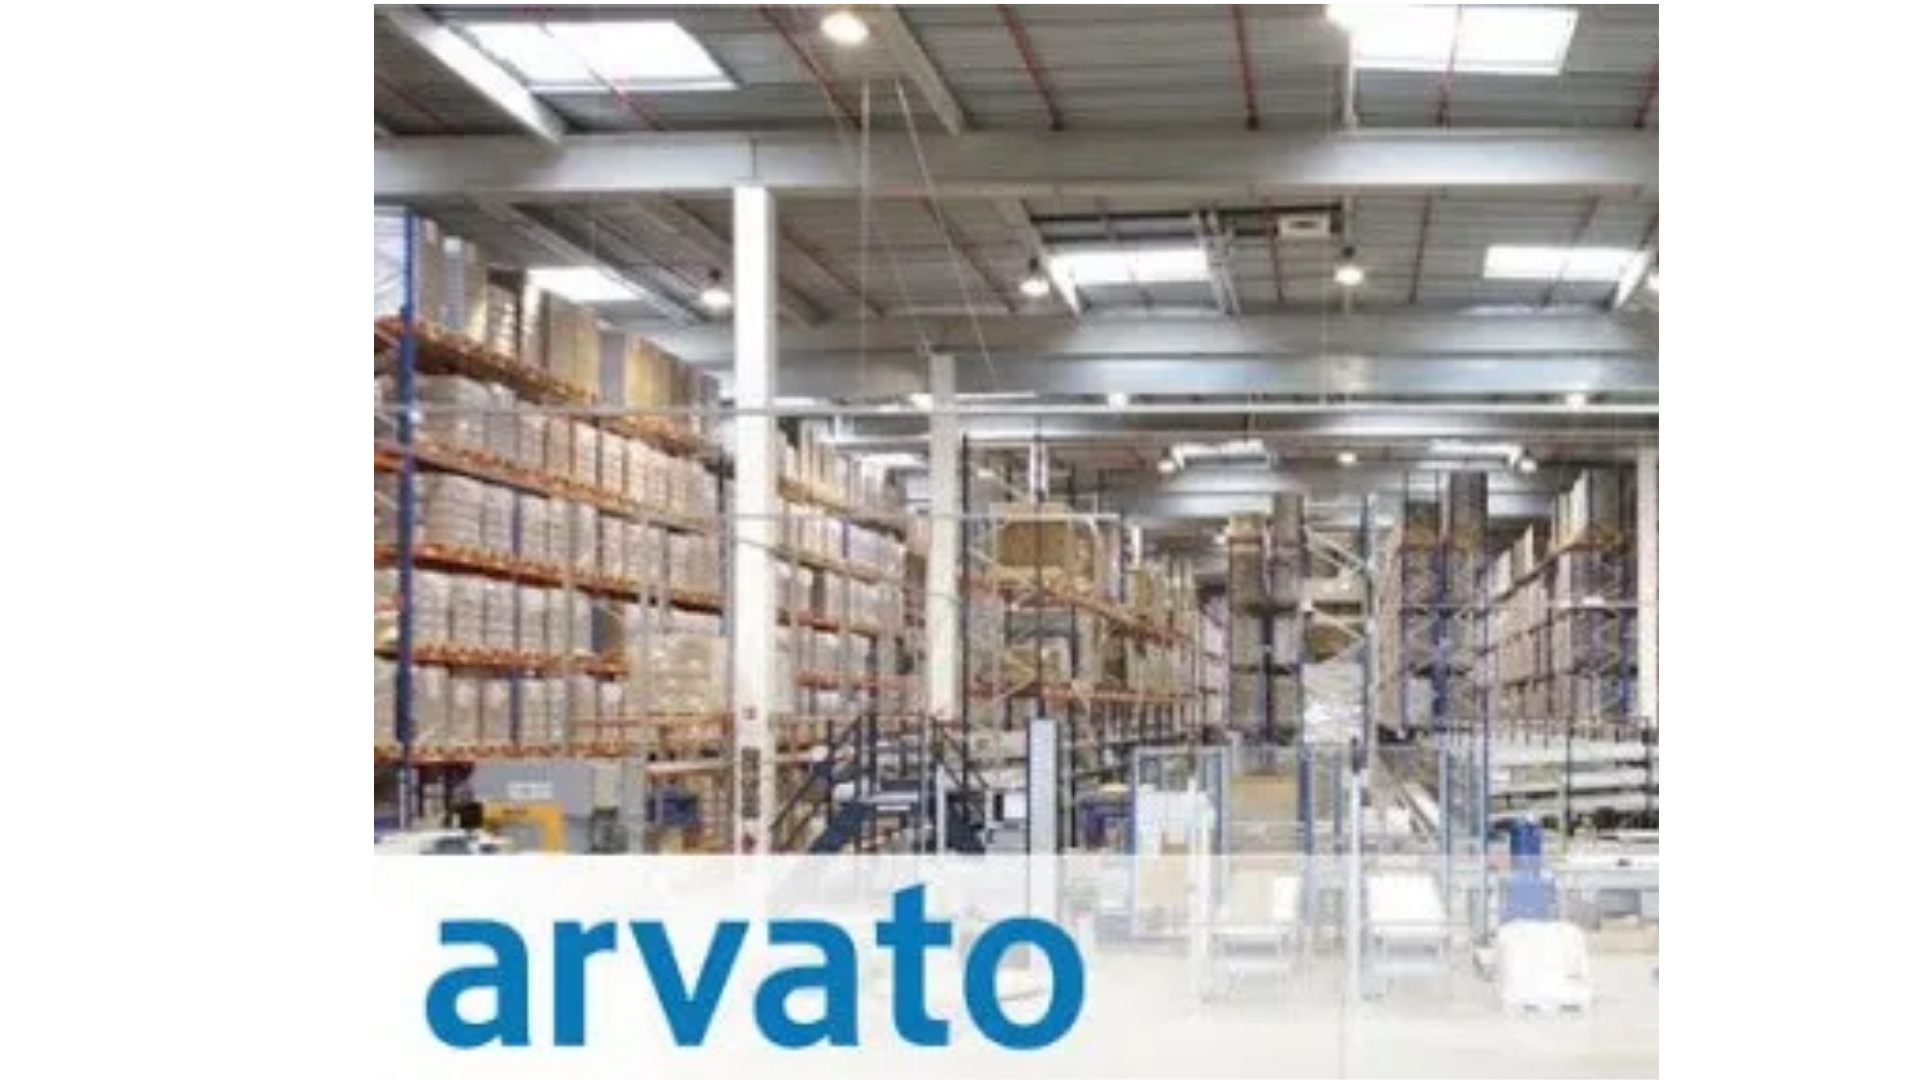 Práca v zahraničí | Universal Consulting ARVATO hľadá zamestnancov logistiky do svojho skladu v Holandsku. Mzda do 19,24€/h+ ďalšie benefity